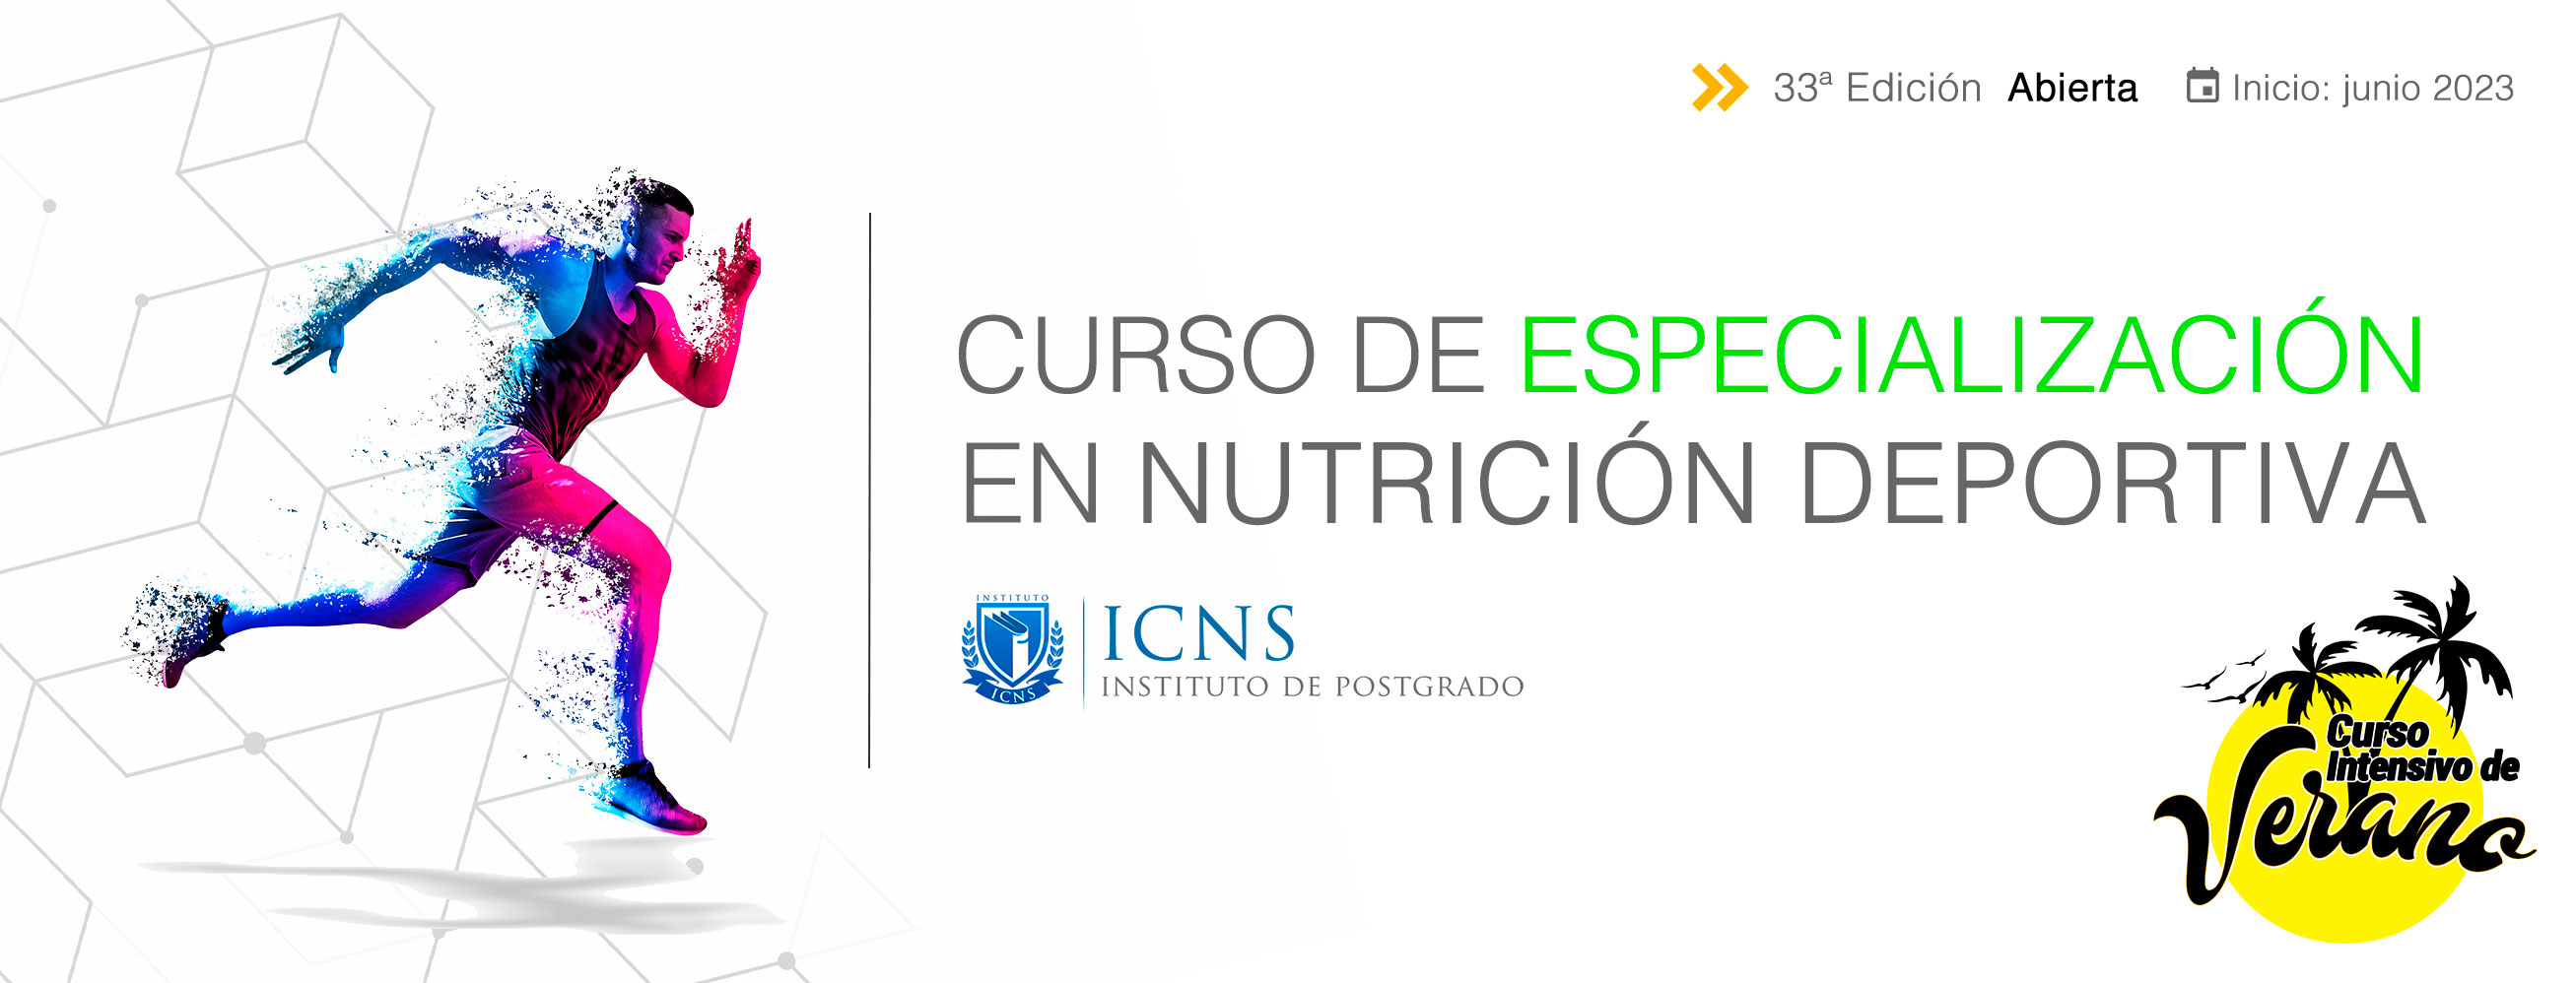 Curso de Especialización en Nutrición Deportiva